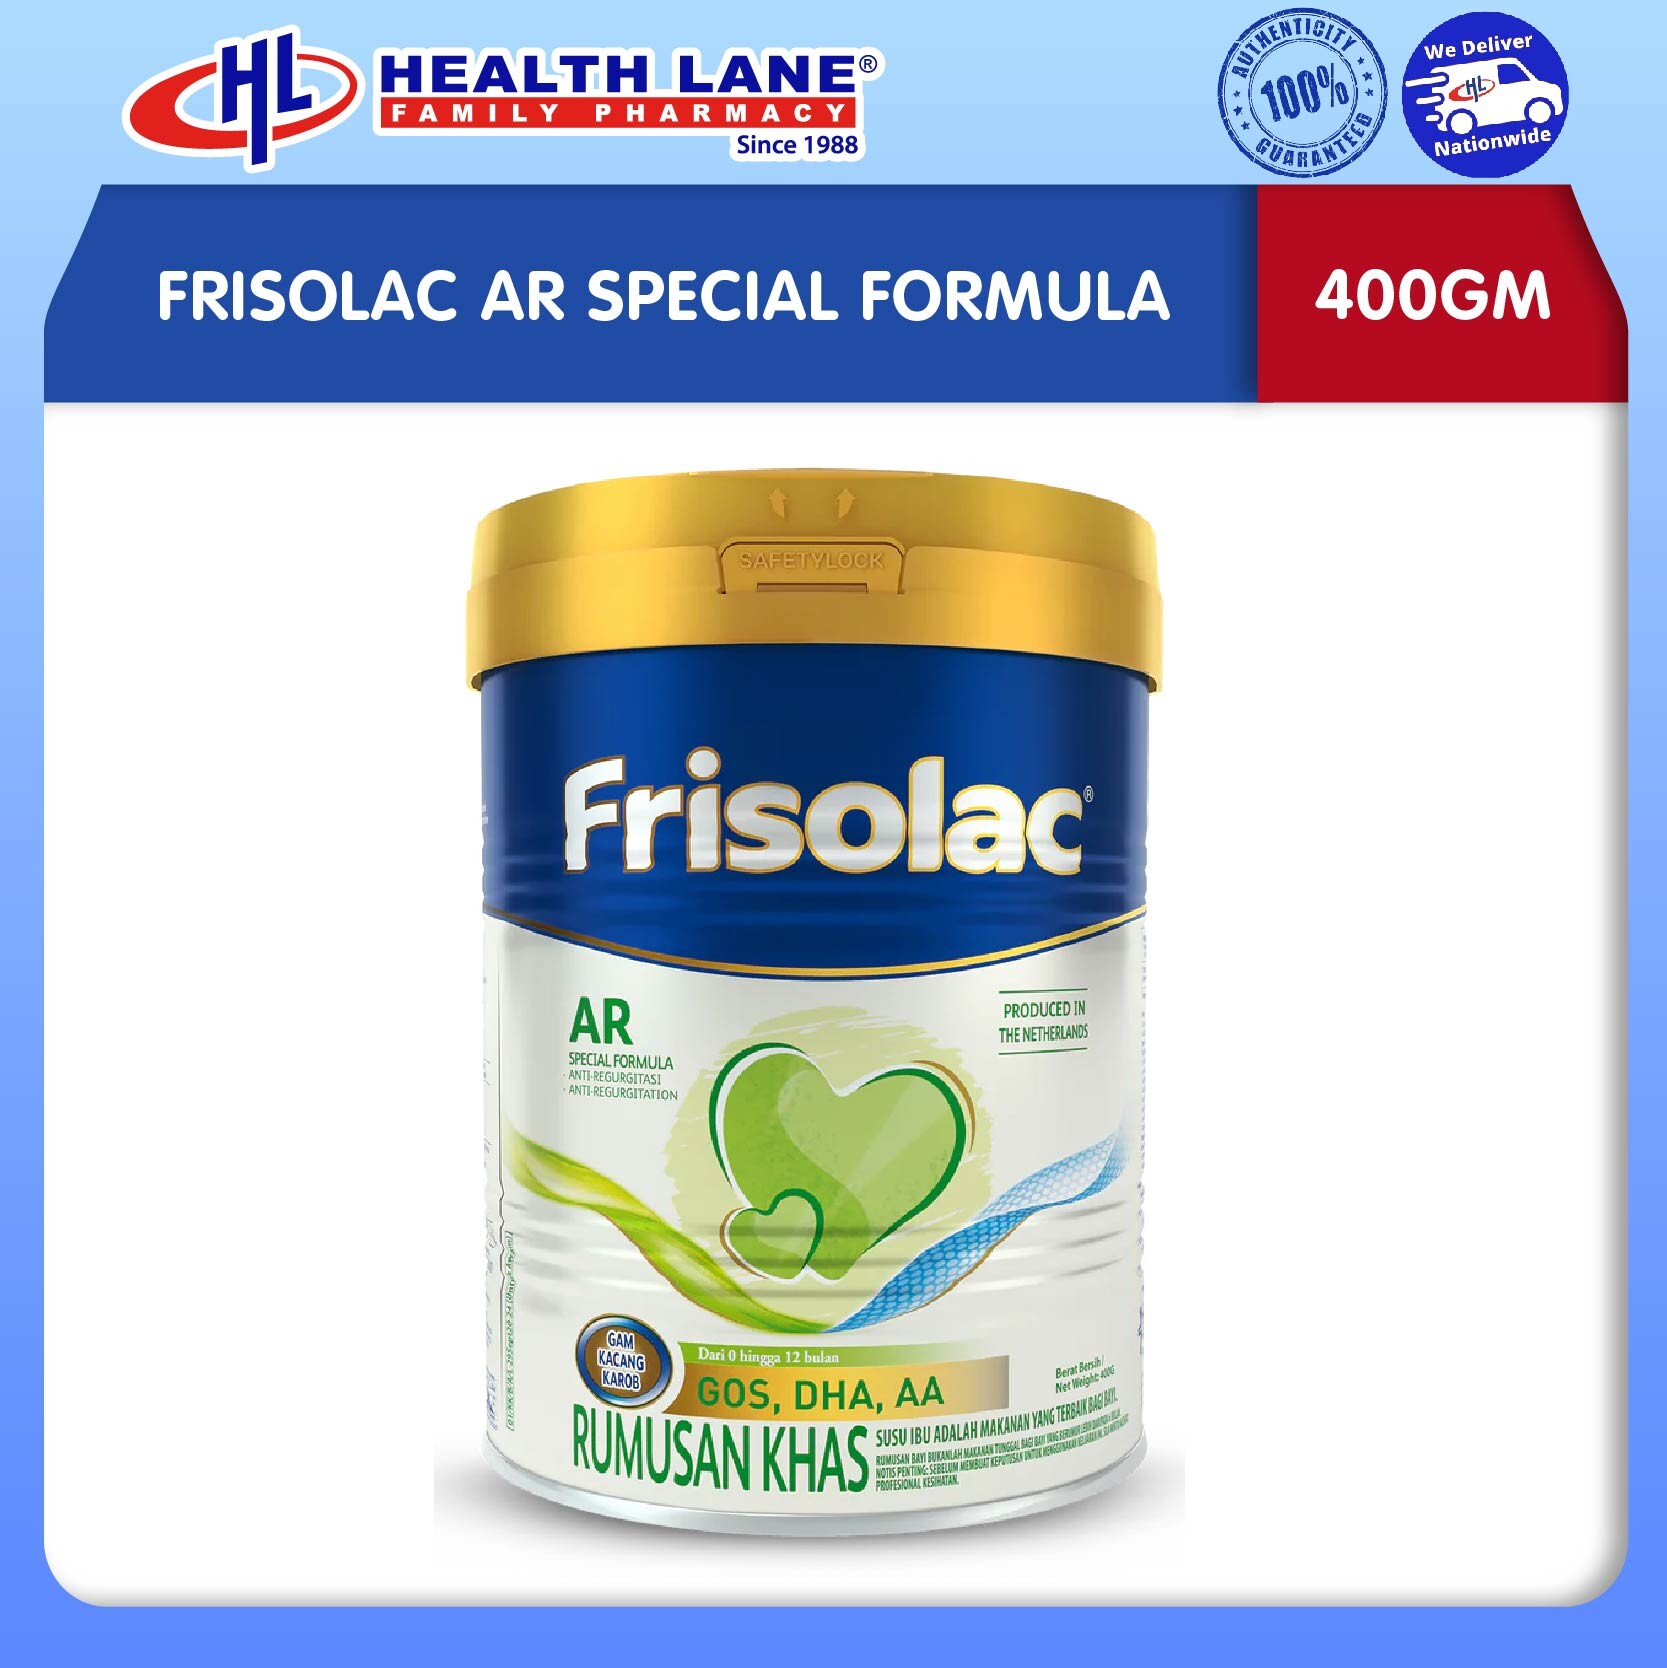 FRISOLAC AR SPECIAL FORMULA (400GM)